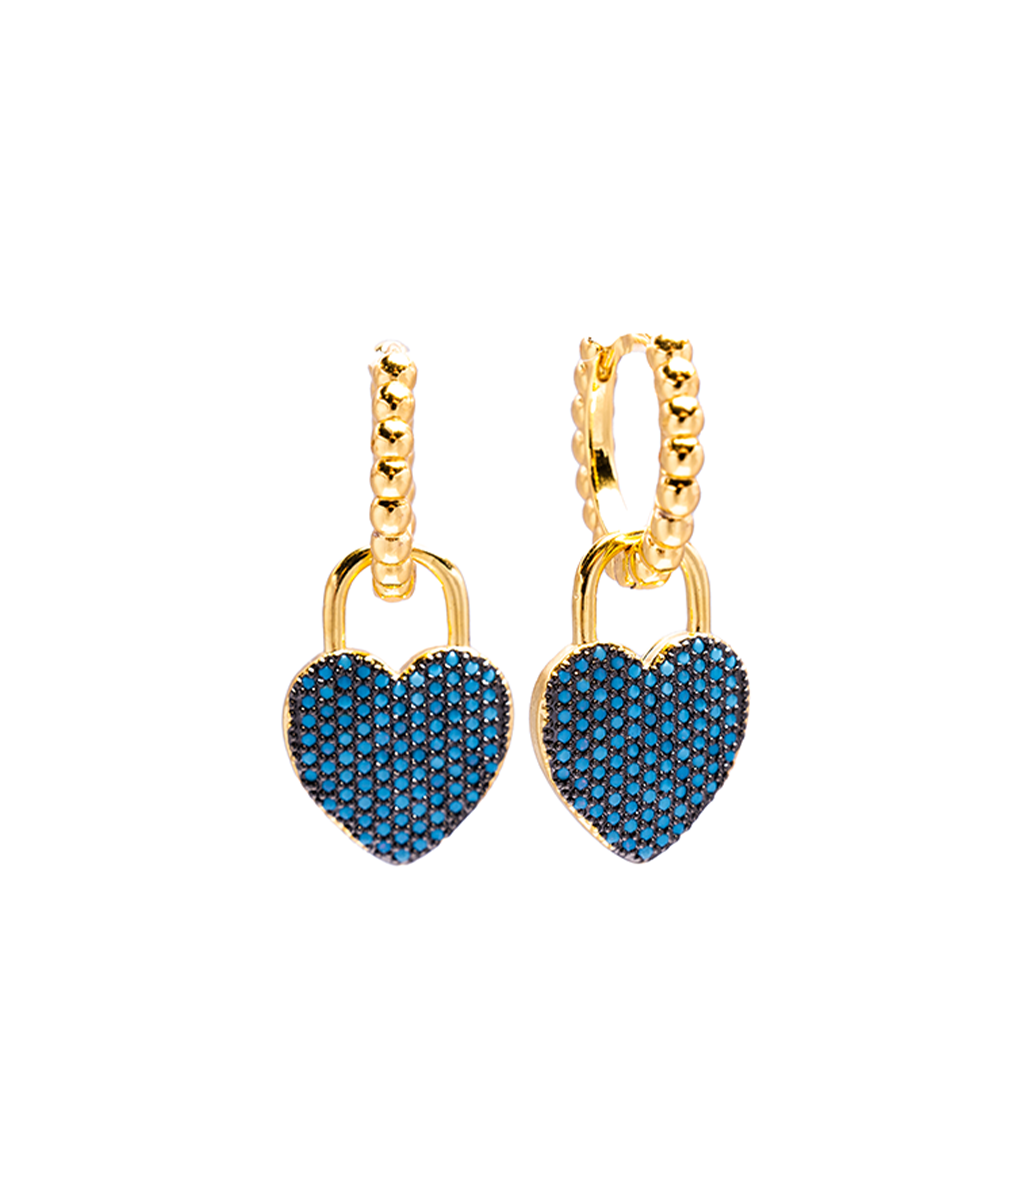 Ethereal Blue Heart Earrings